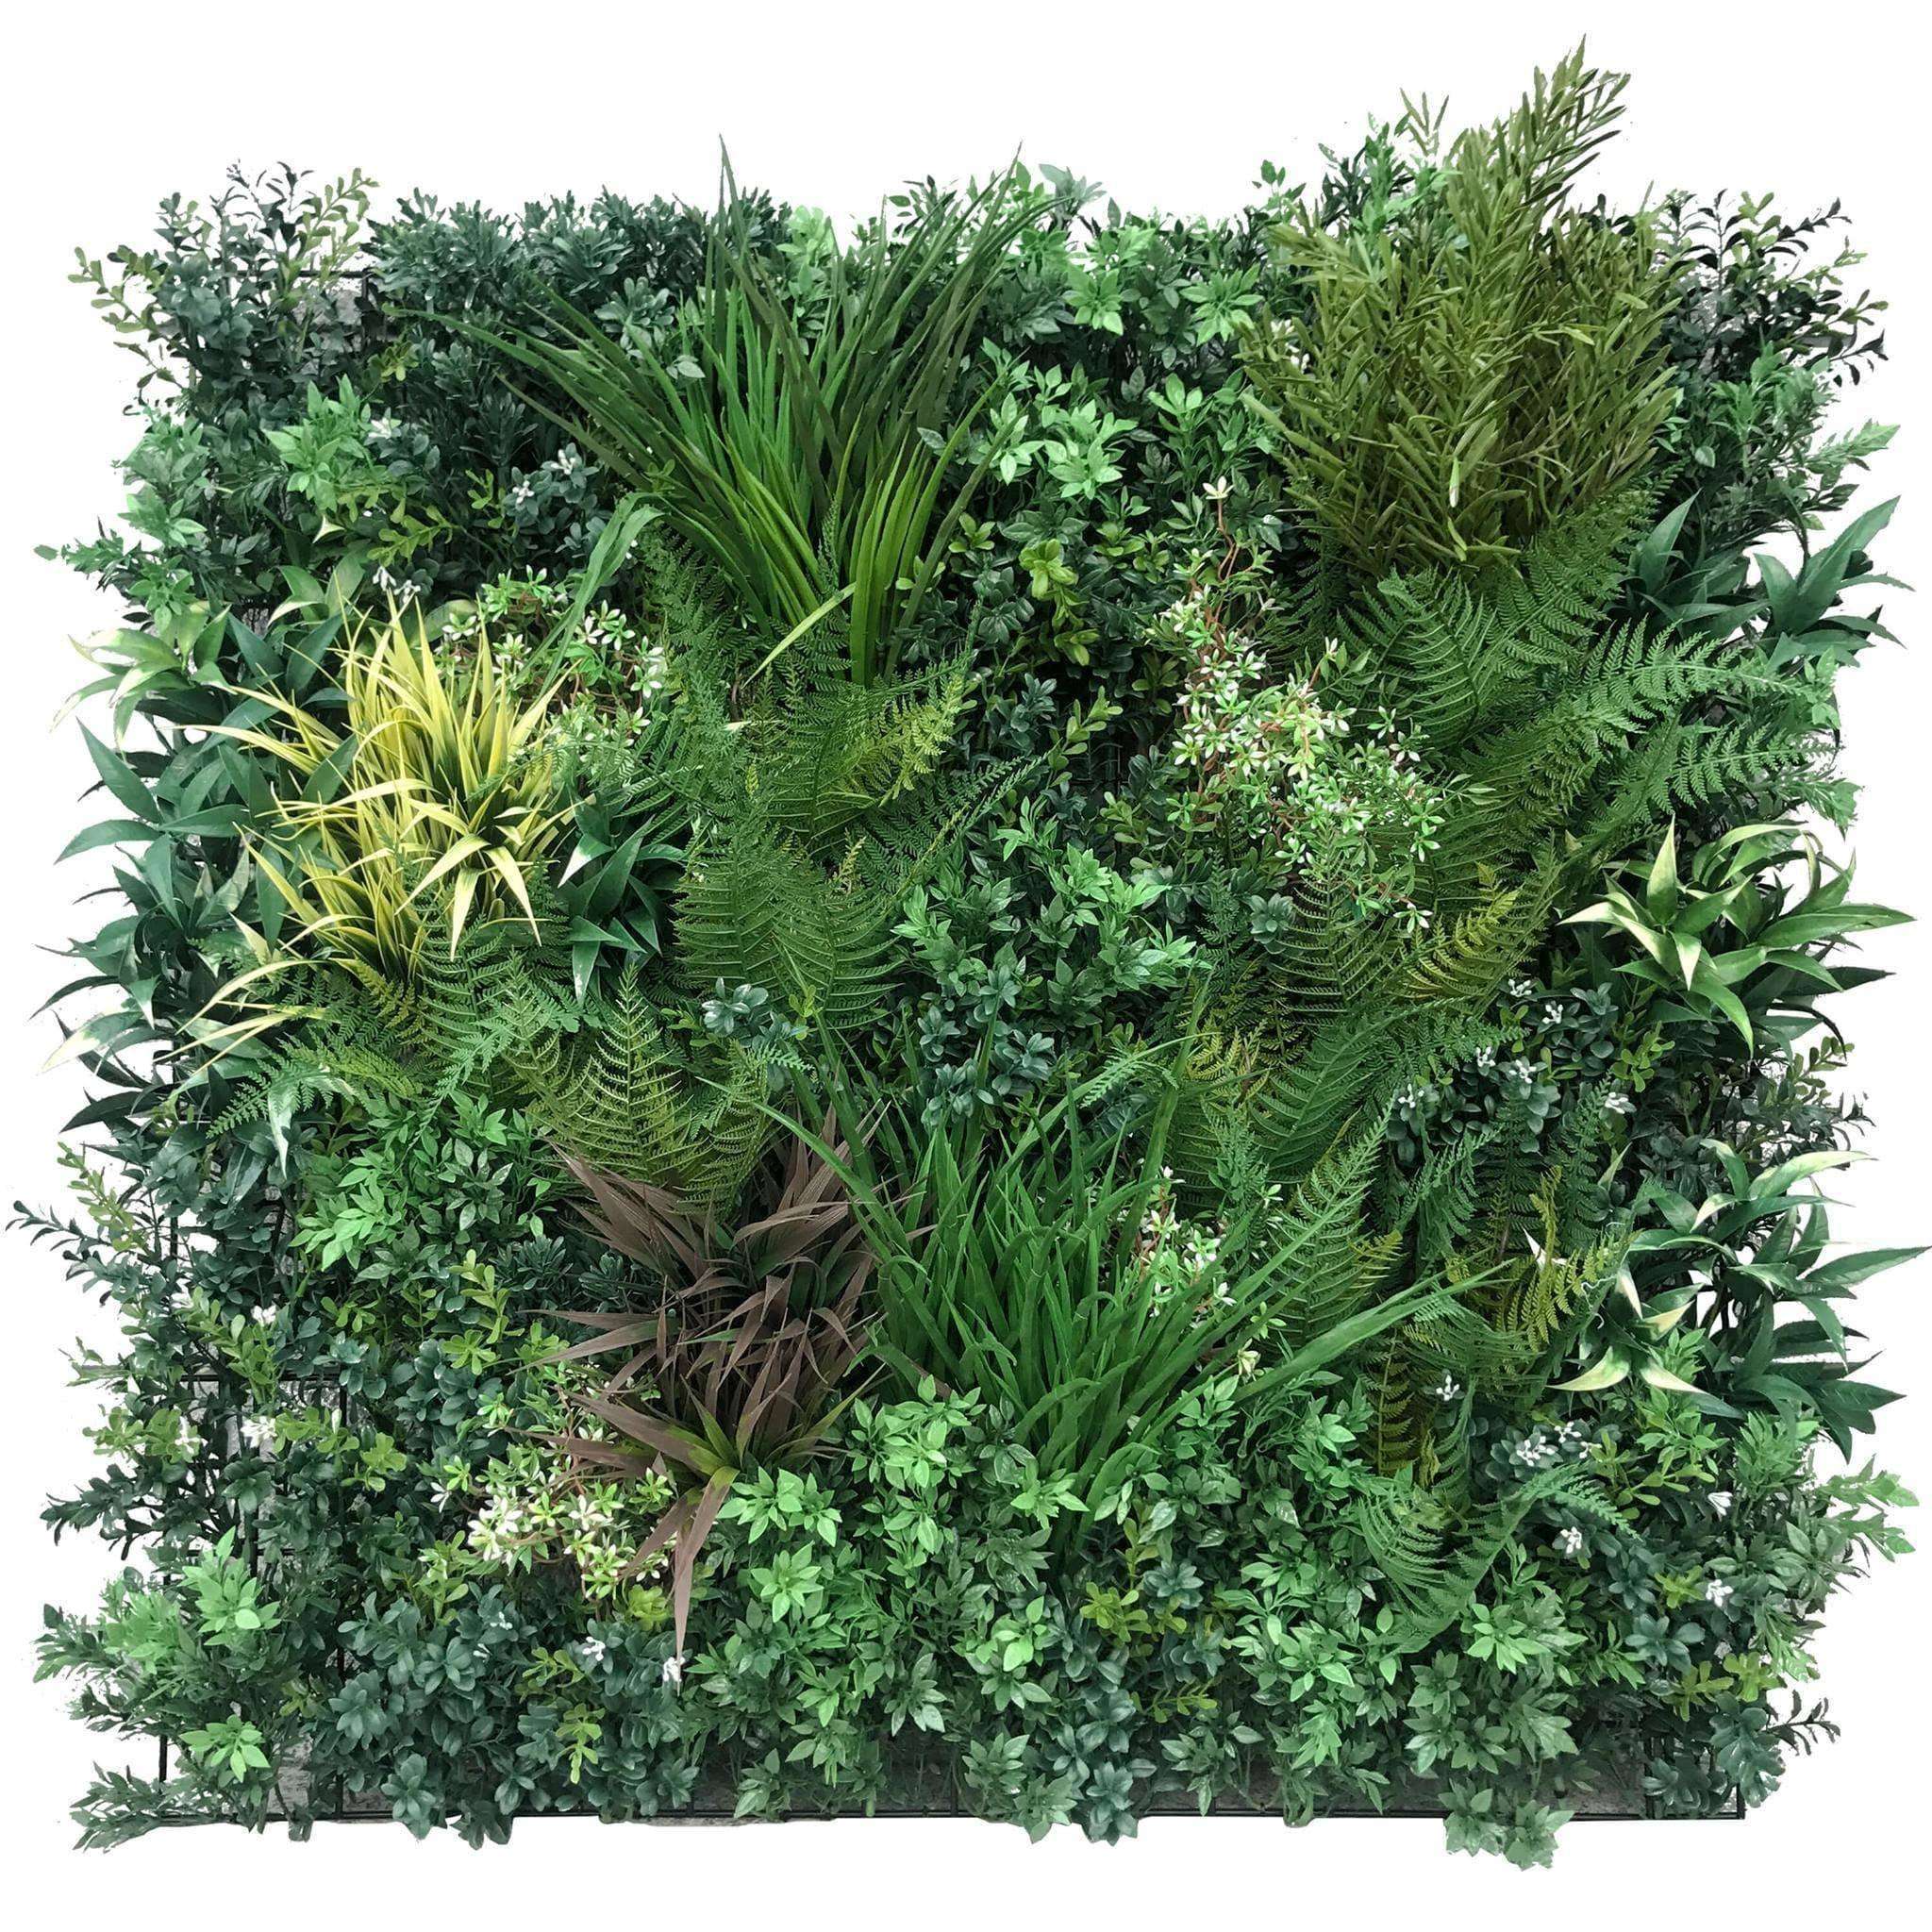 bespoke-autumn-greenery-artificial-vertical-garden-green-wall-90cm-x-90cm-uv-resistant-419093.jpg